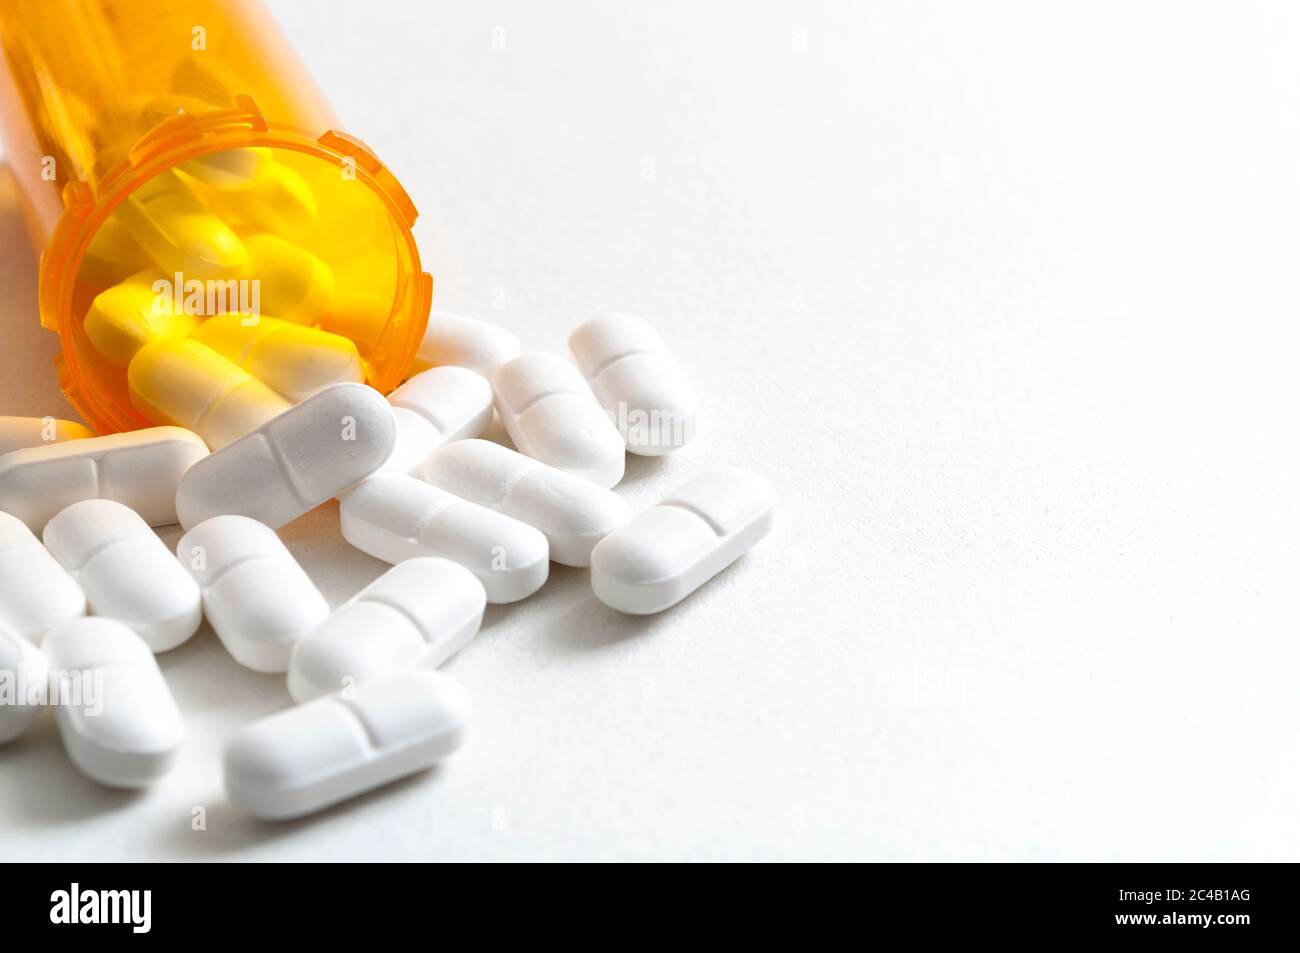 Épidémie d'opioïdes, abus de drogues et concept de surdose avec des opioïdes de prescription dispersés qui se répandent de la bouteille orange avec l'espace de copie. Hydrocodone est le g Banque D'Images